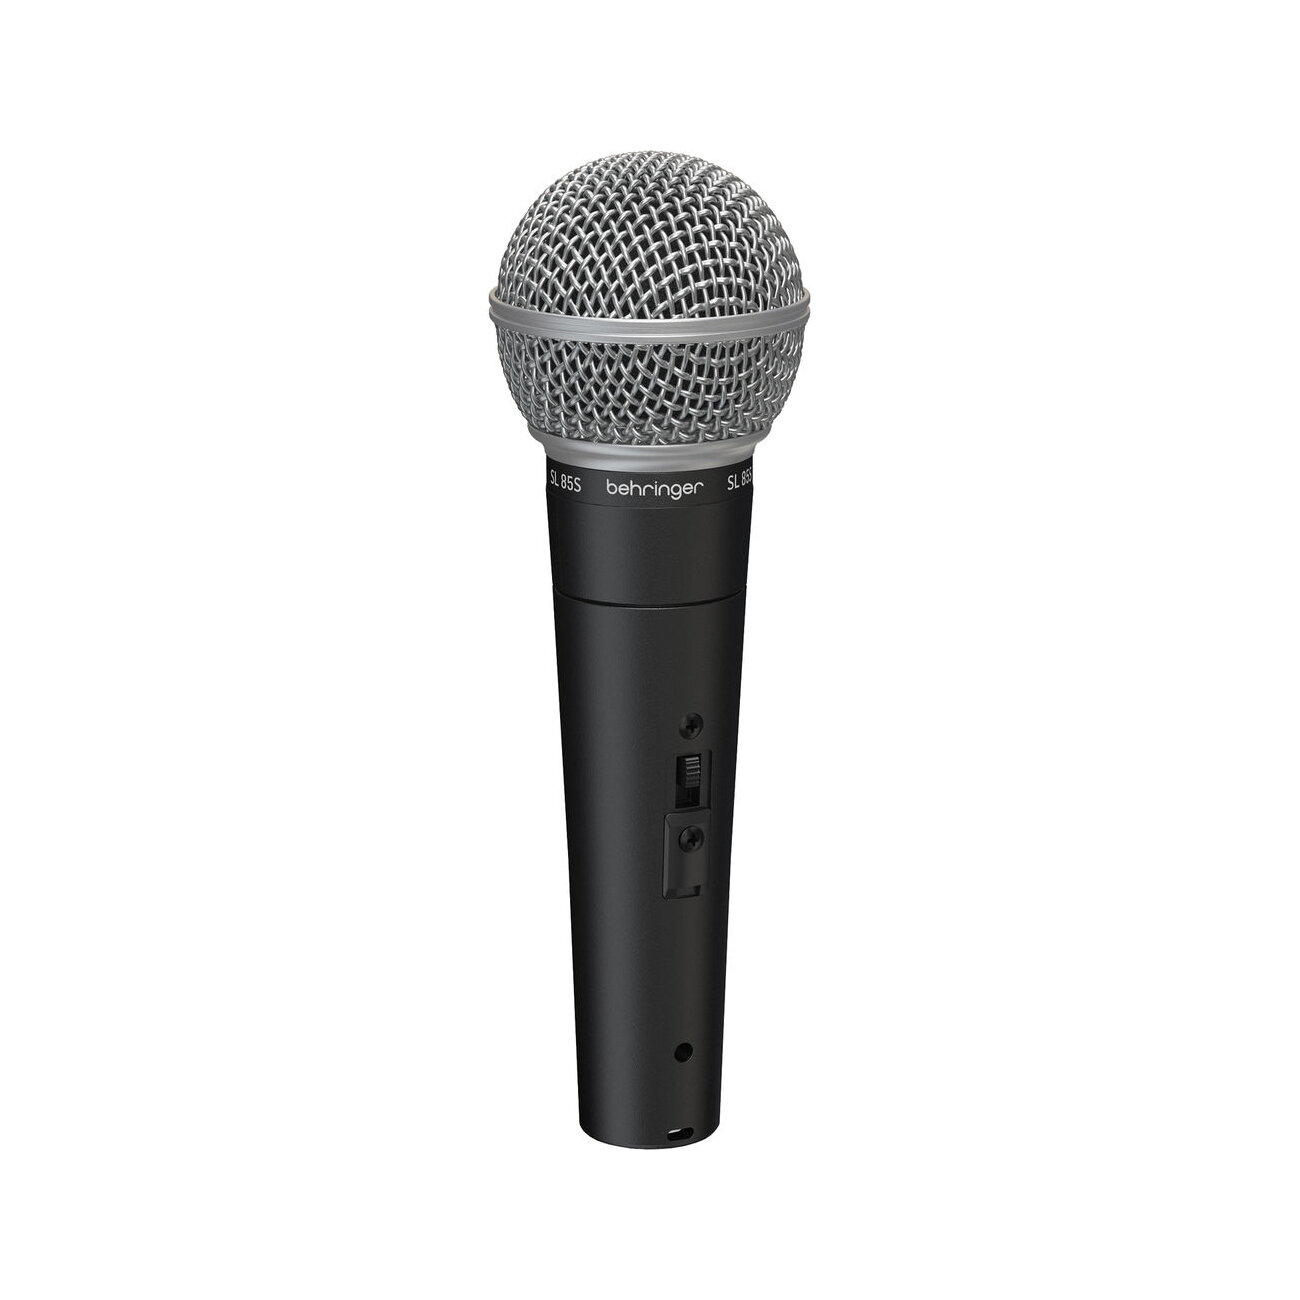 BEHRINGER SL 85S - динамический кардиоидный вокальный микрофон с выключателем 50 - 16000 Гц 300 Ом